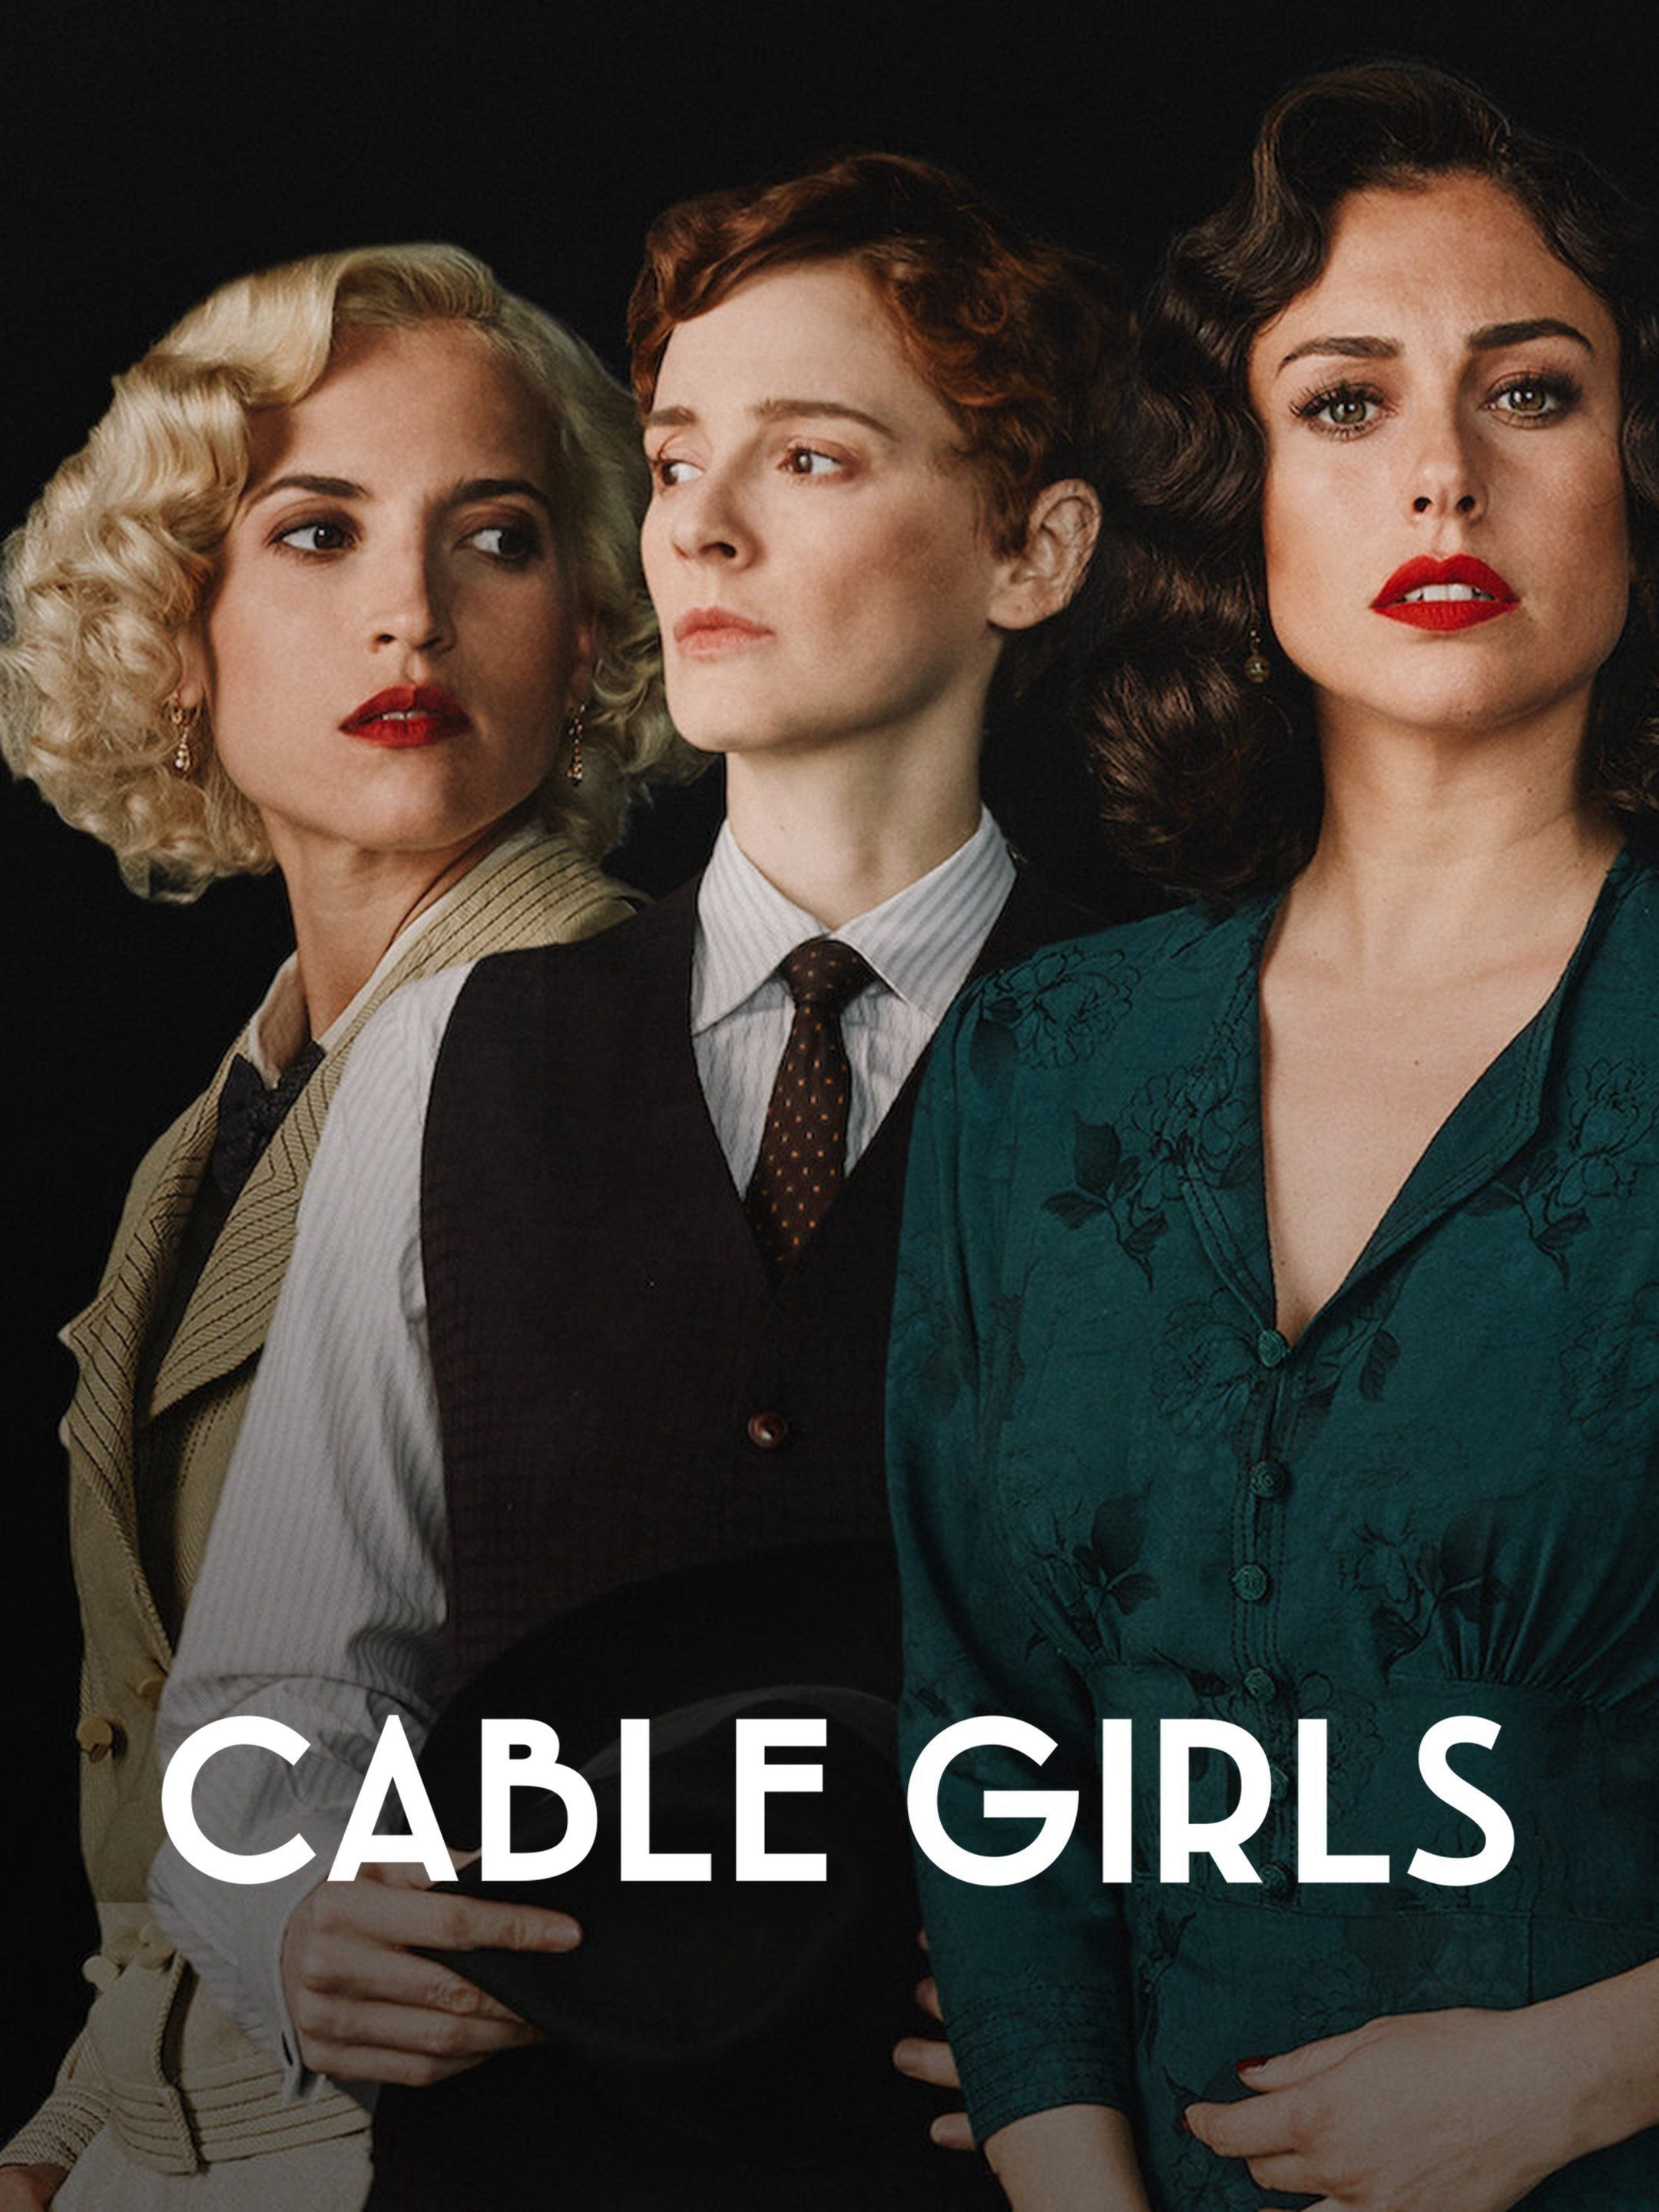 Những cô gái trực tổng đài (Phần 4) - Cable Girls (Season 4)